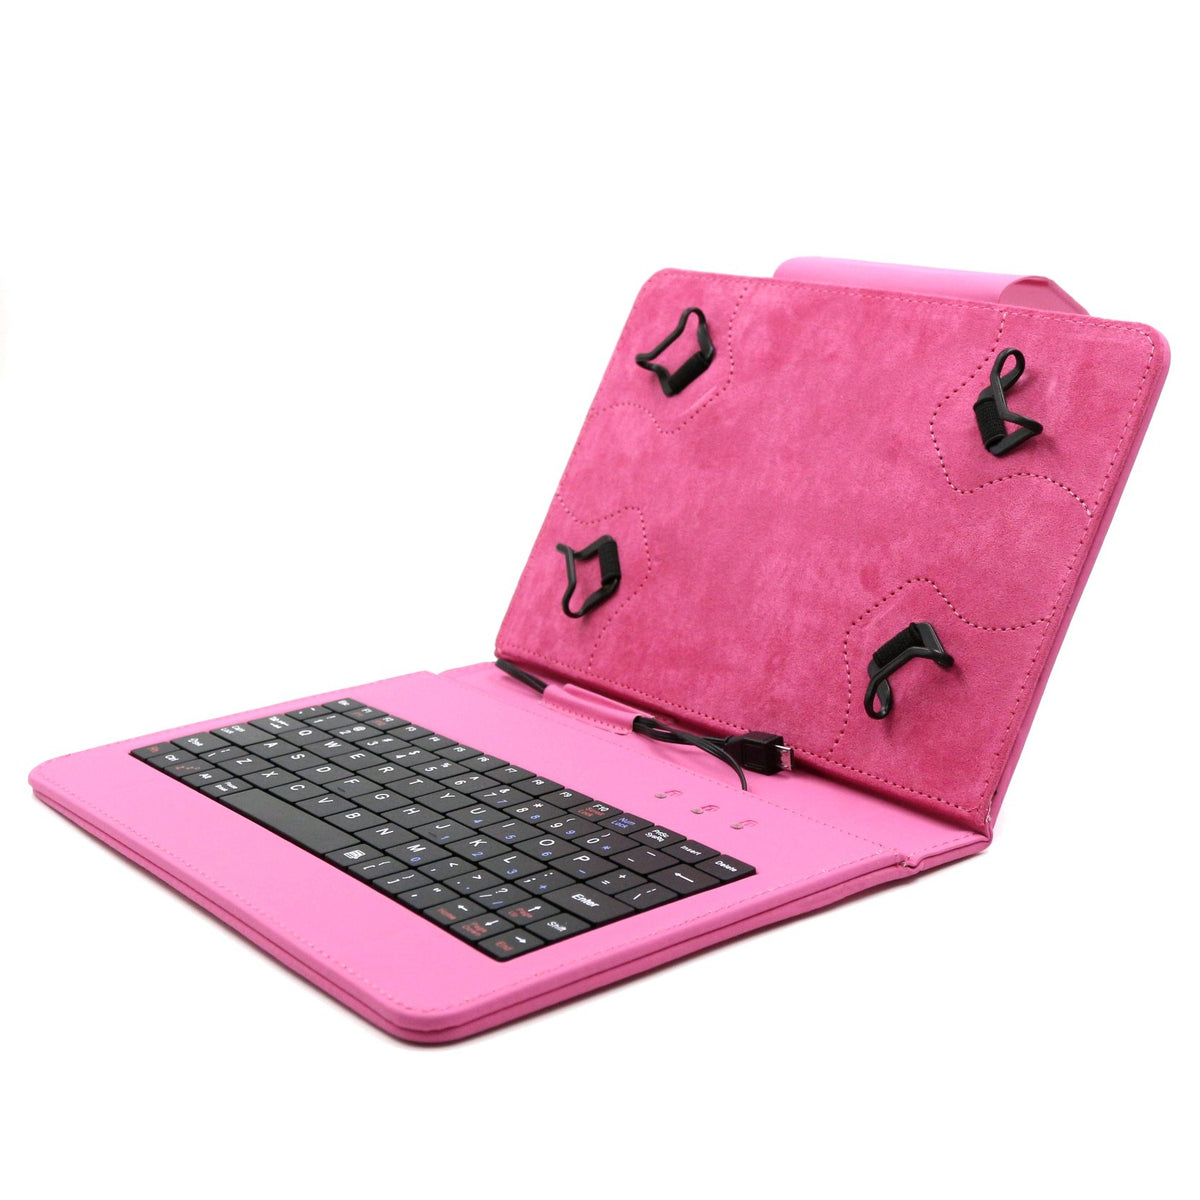 C-TECH PROTECT pouzdro s klávesnicí 7"-7,85" NUTKC-01, růžové